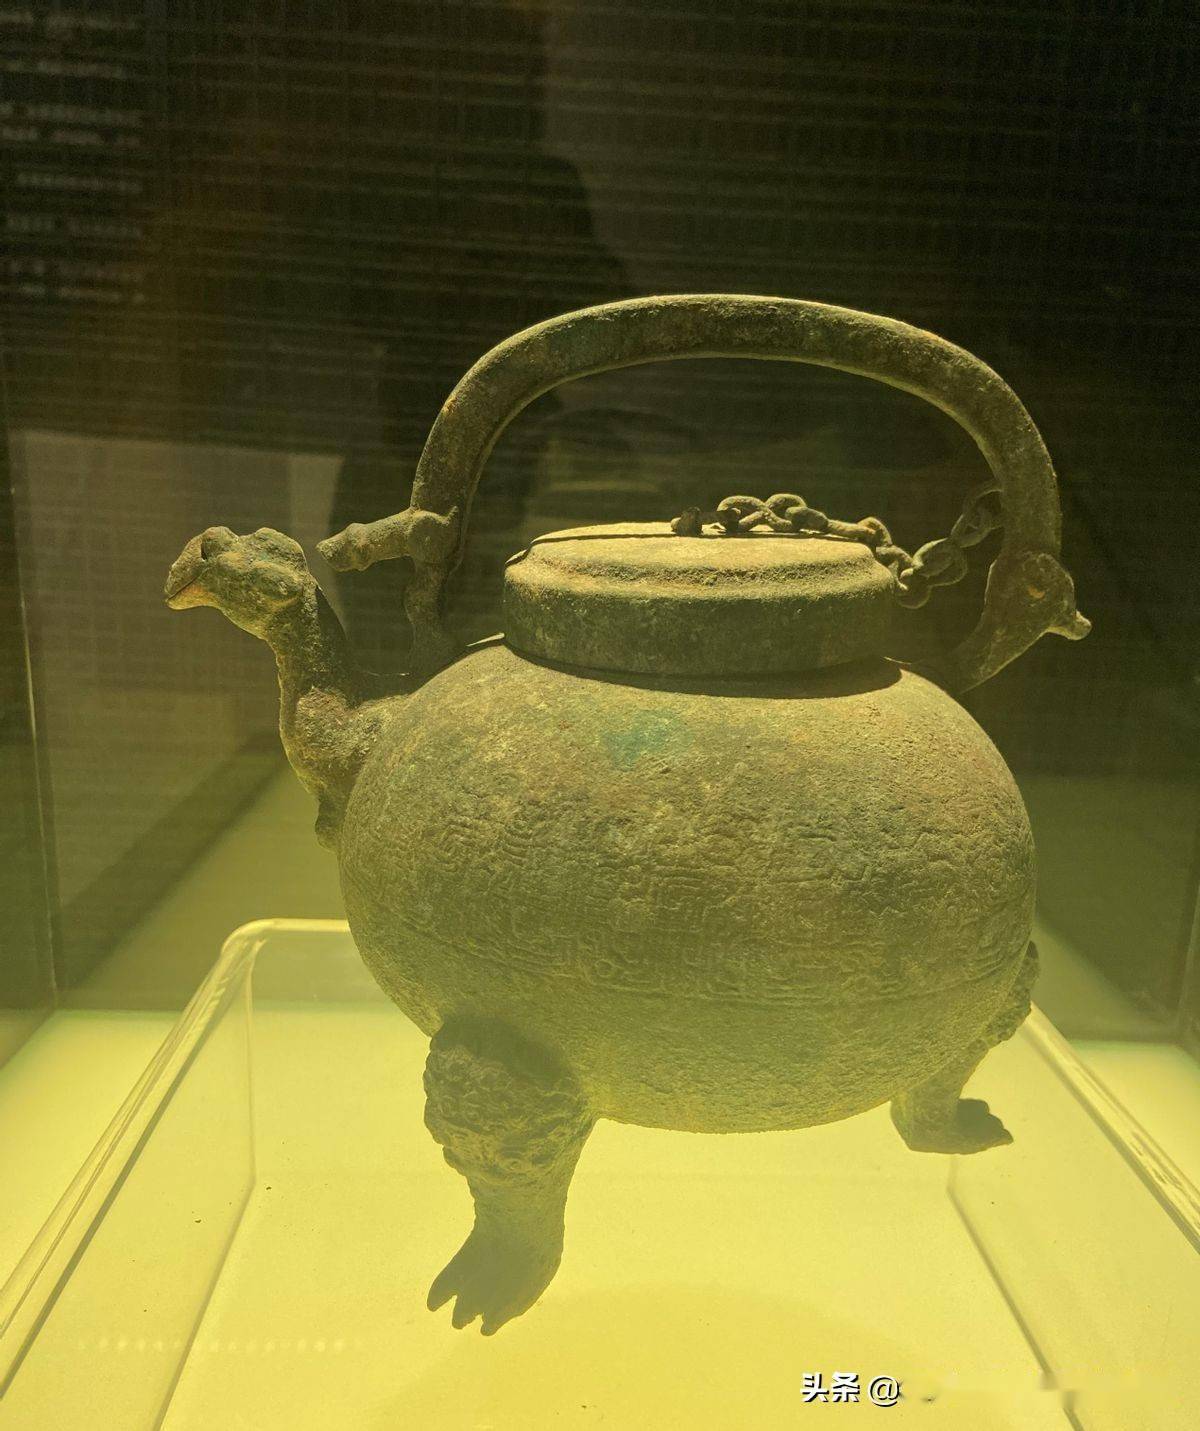 西安:秦二世陵博物馆很大,但展品都是别人墓中出土的文物